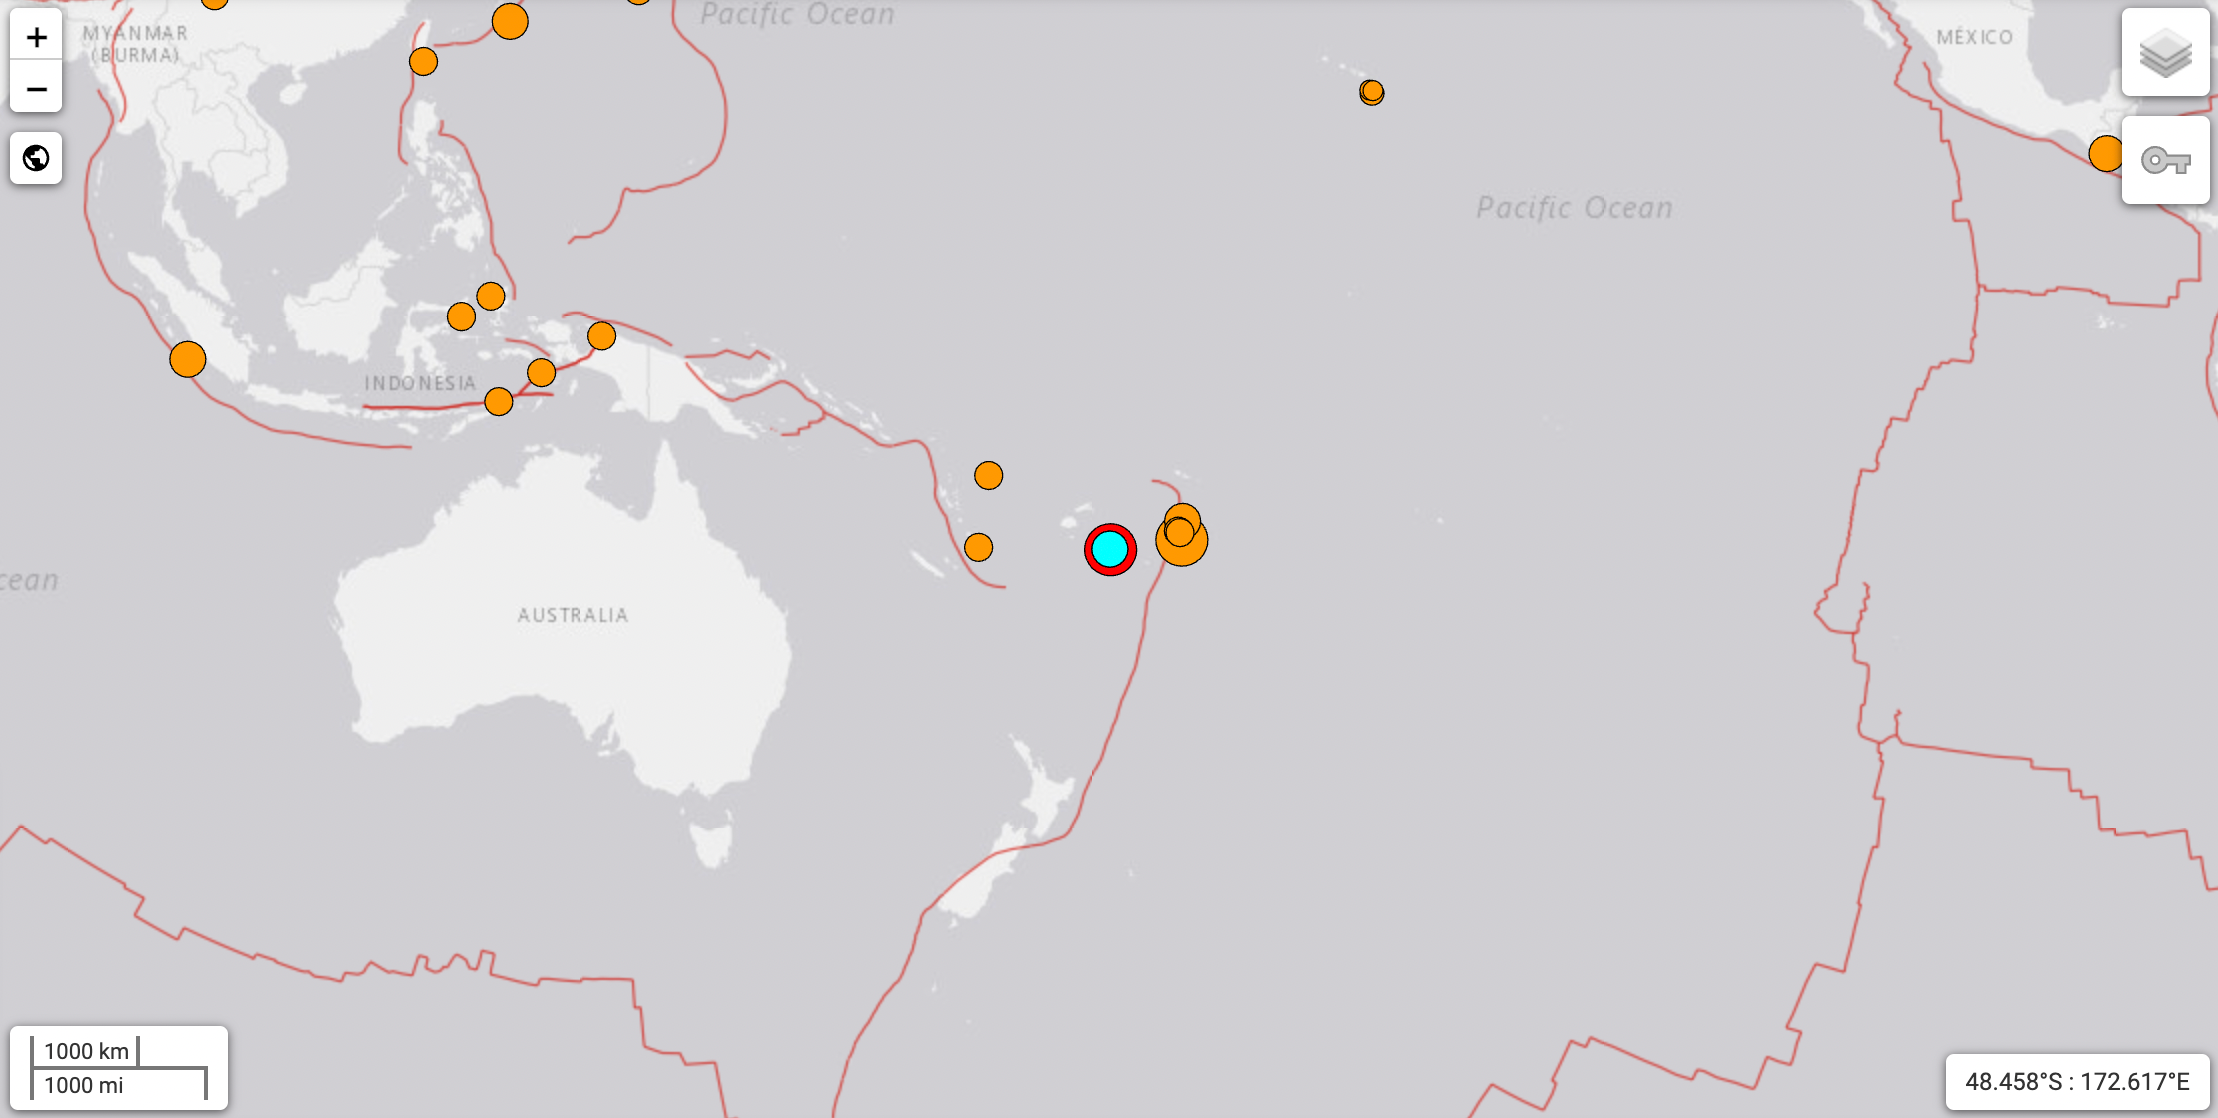 Earthquake off the coast of Fiji